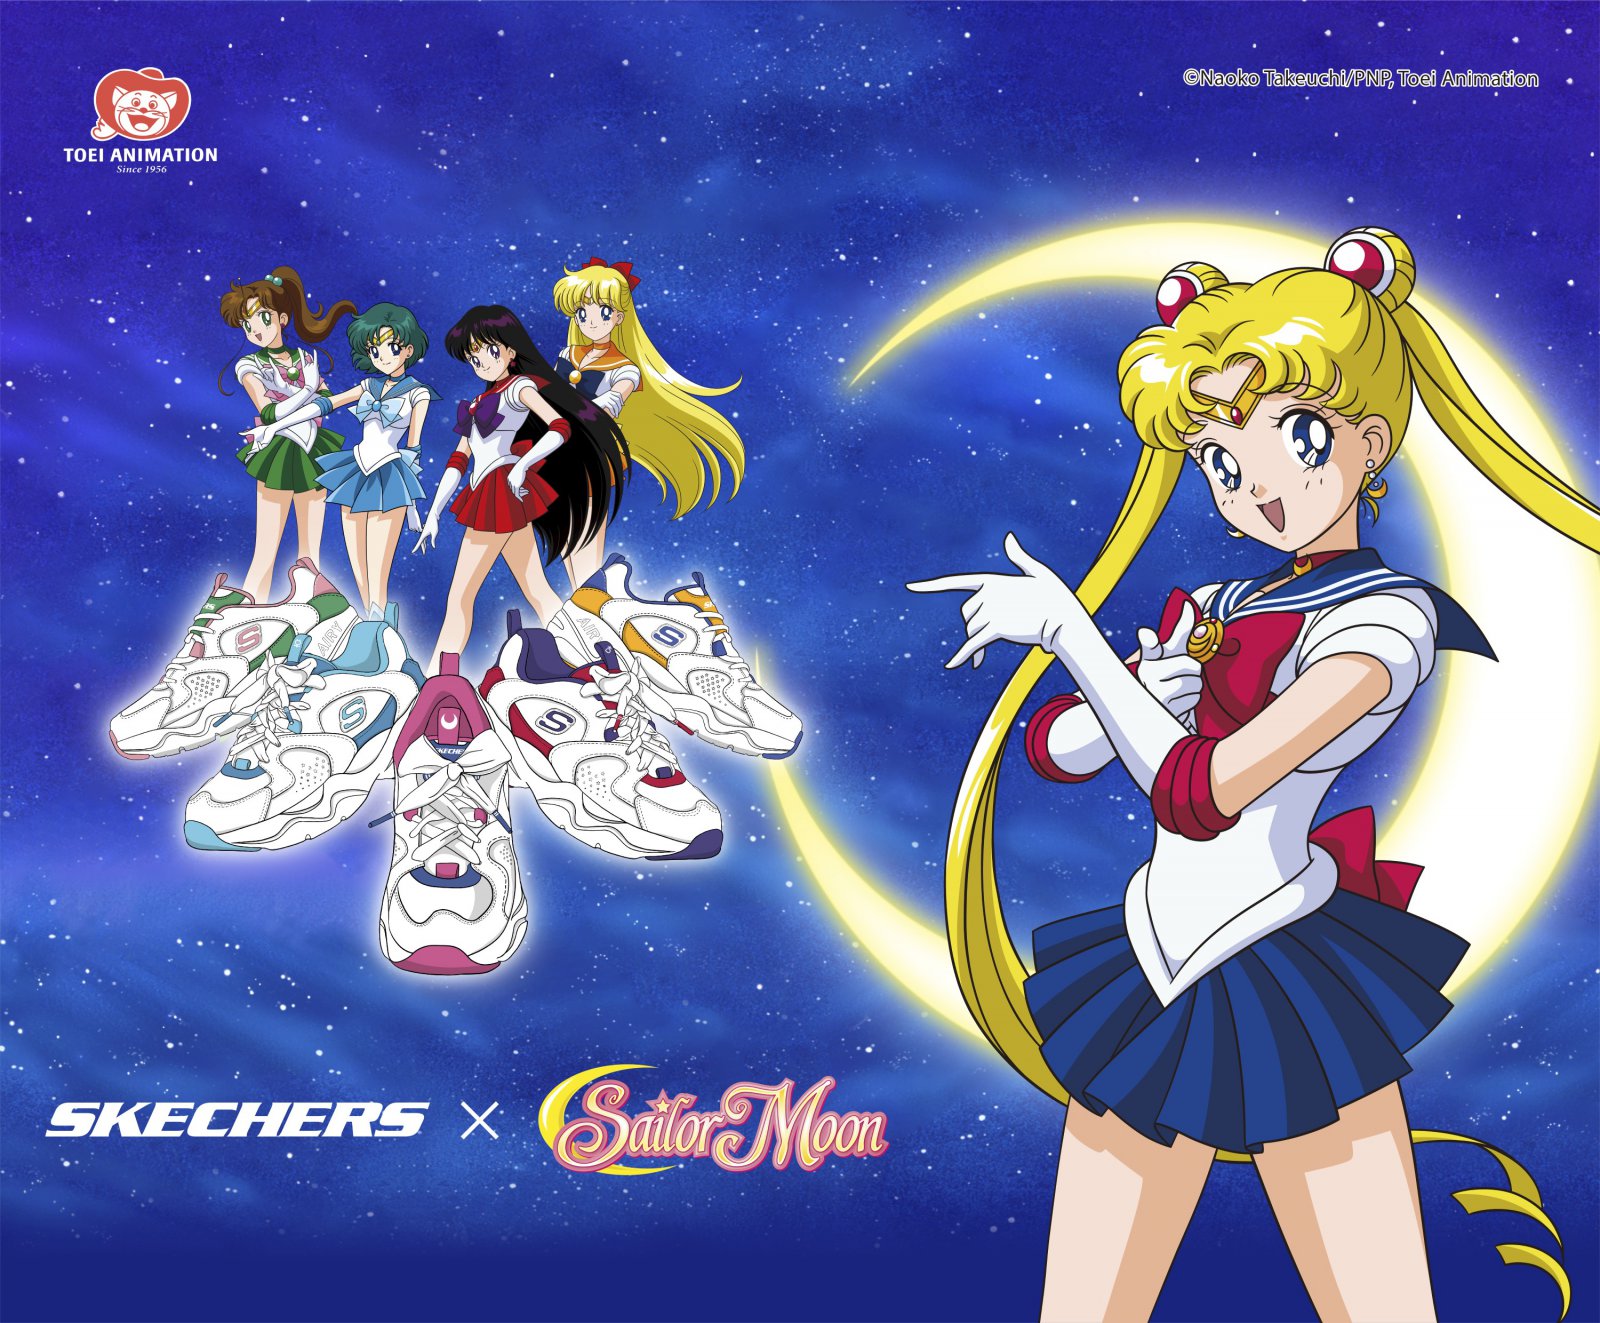 Skechers X Sailor moon | Skechers X Sailor Moon | รวมความน่ารักสุดคิ้วท์ ของ SKECHERS X SAILOR MOON ที่เหล่าสาวกเซเลอร์มูนต้องมี